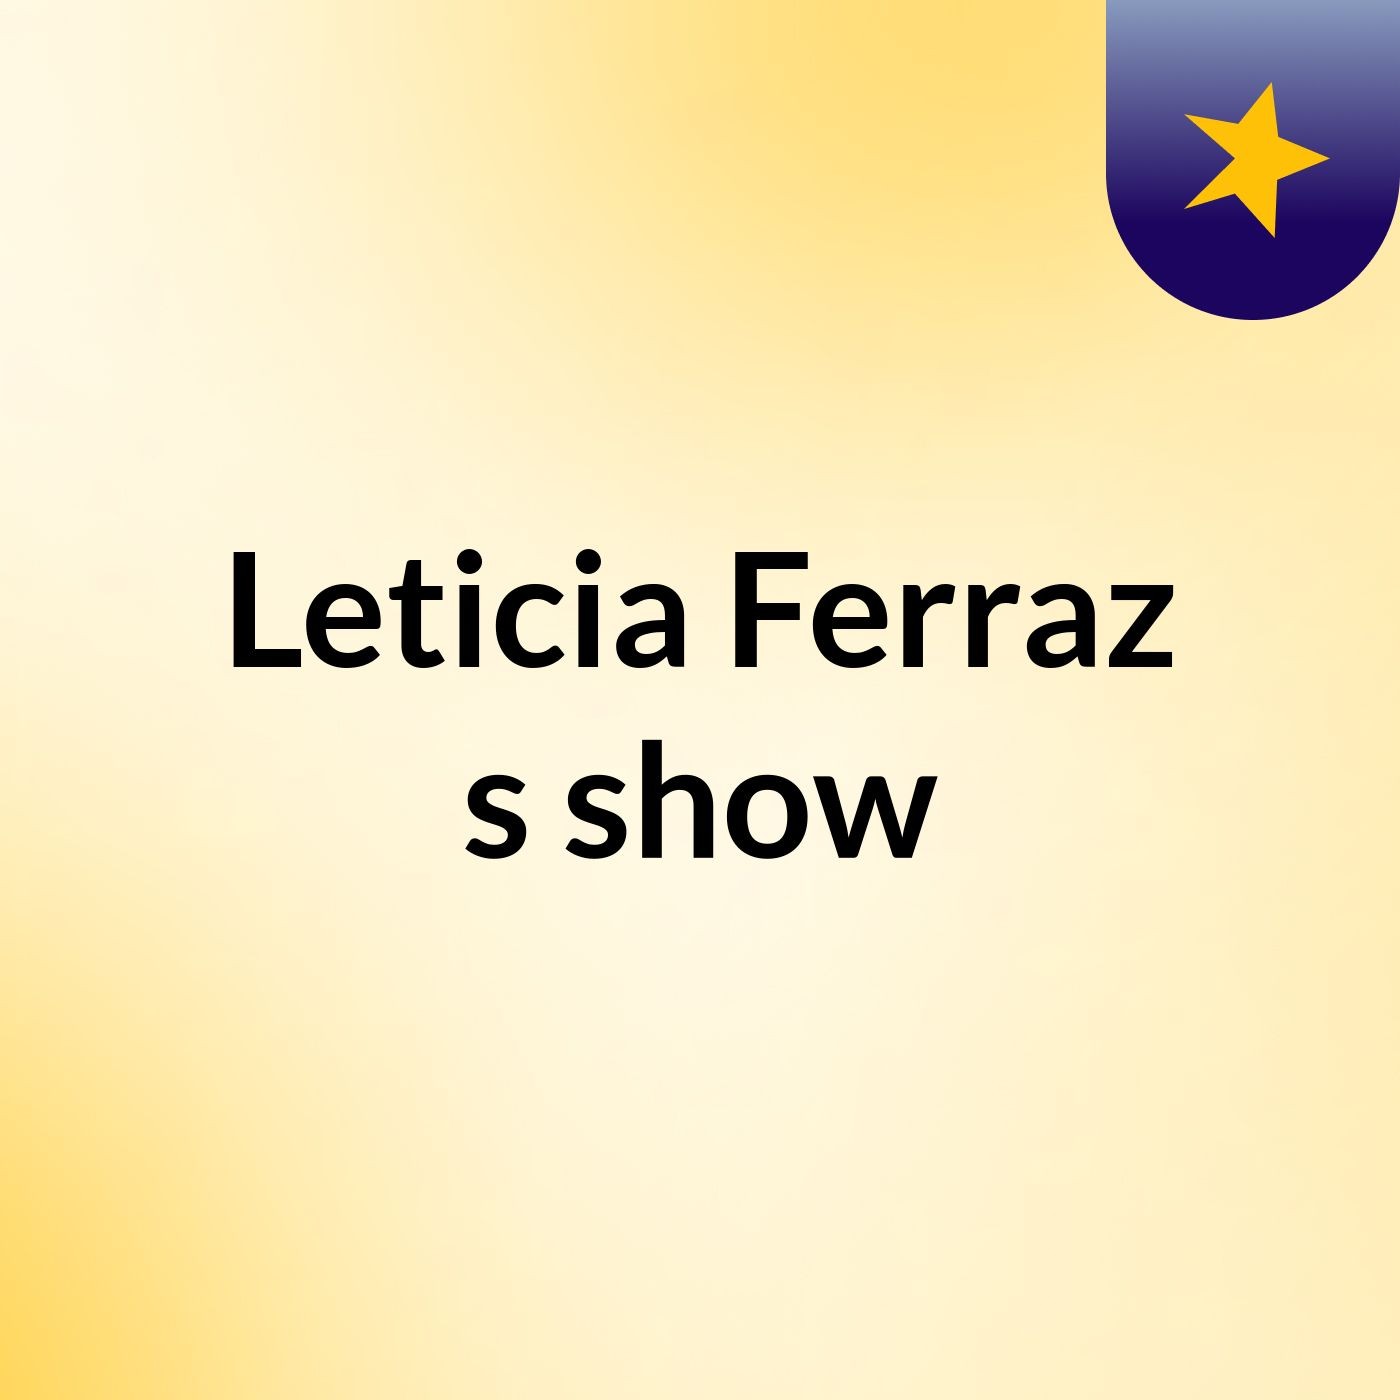 Leticia Ferraz's show